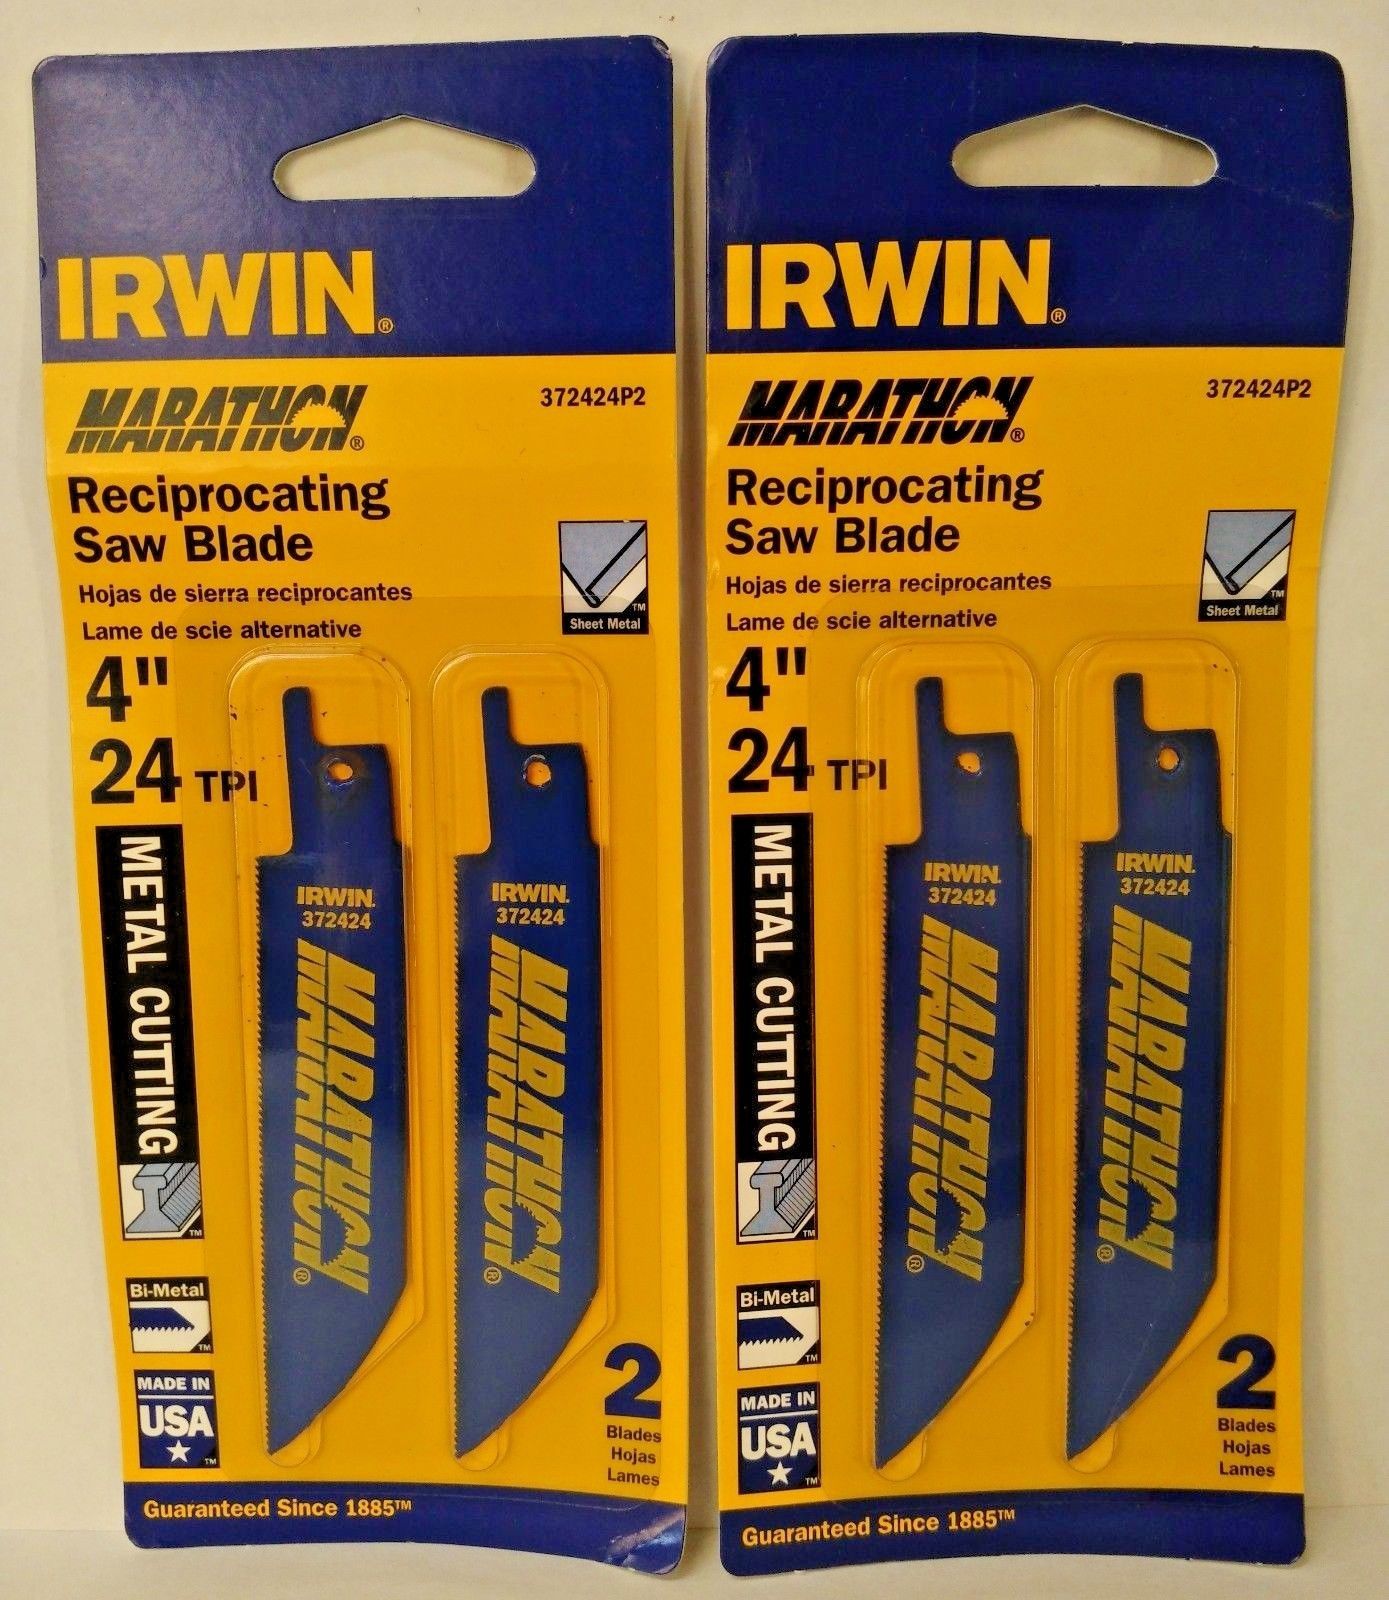 Irwin 372424P2 4" x 24 TPI Bi-Metal Reciprocating Saw Blades USA (2) 2 Packs